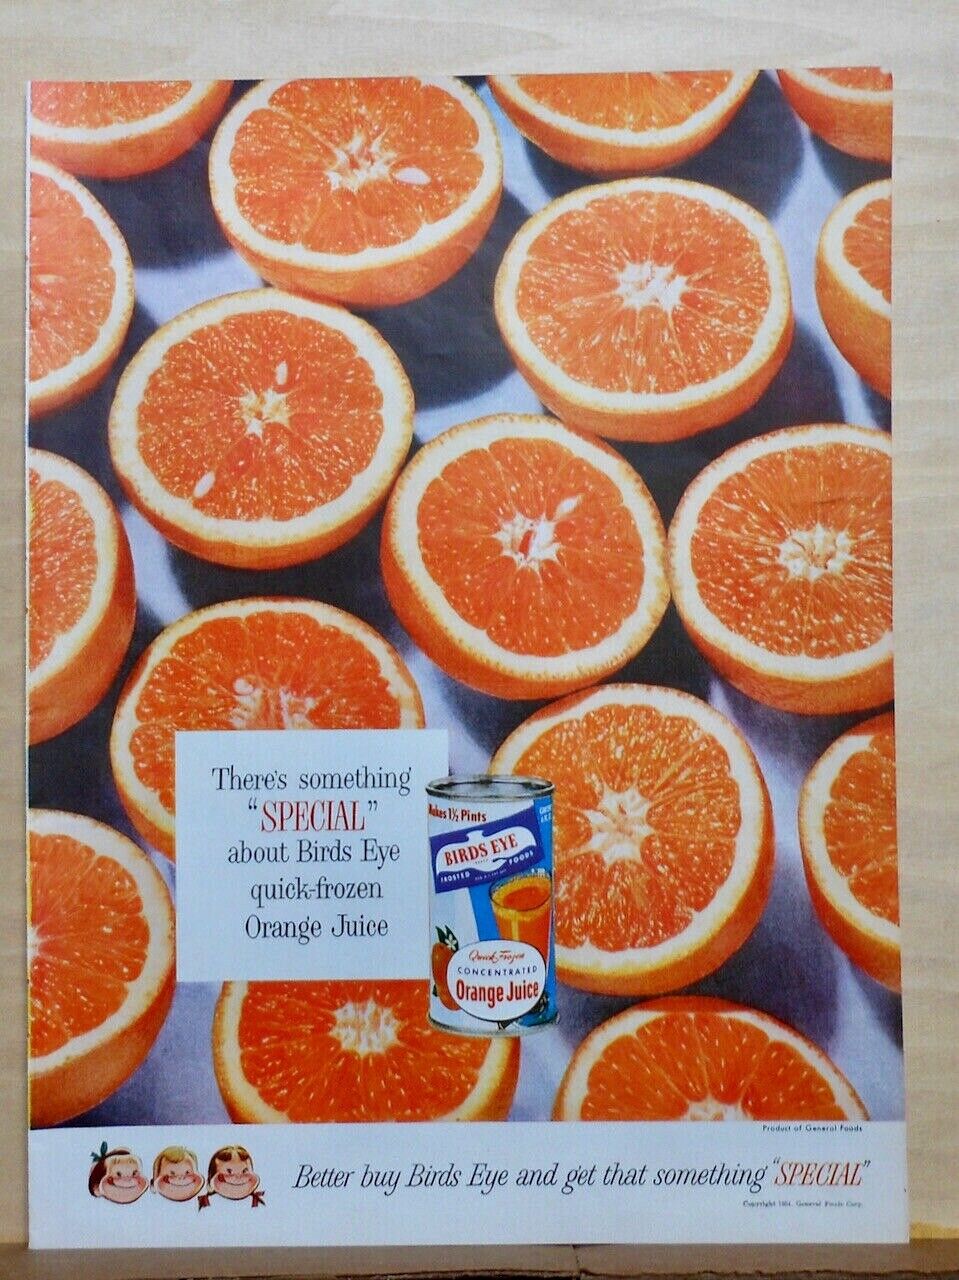 1954 magazine ad for Birds Eye Orange Juice - Something Special, oranges galore